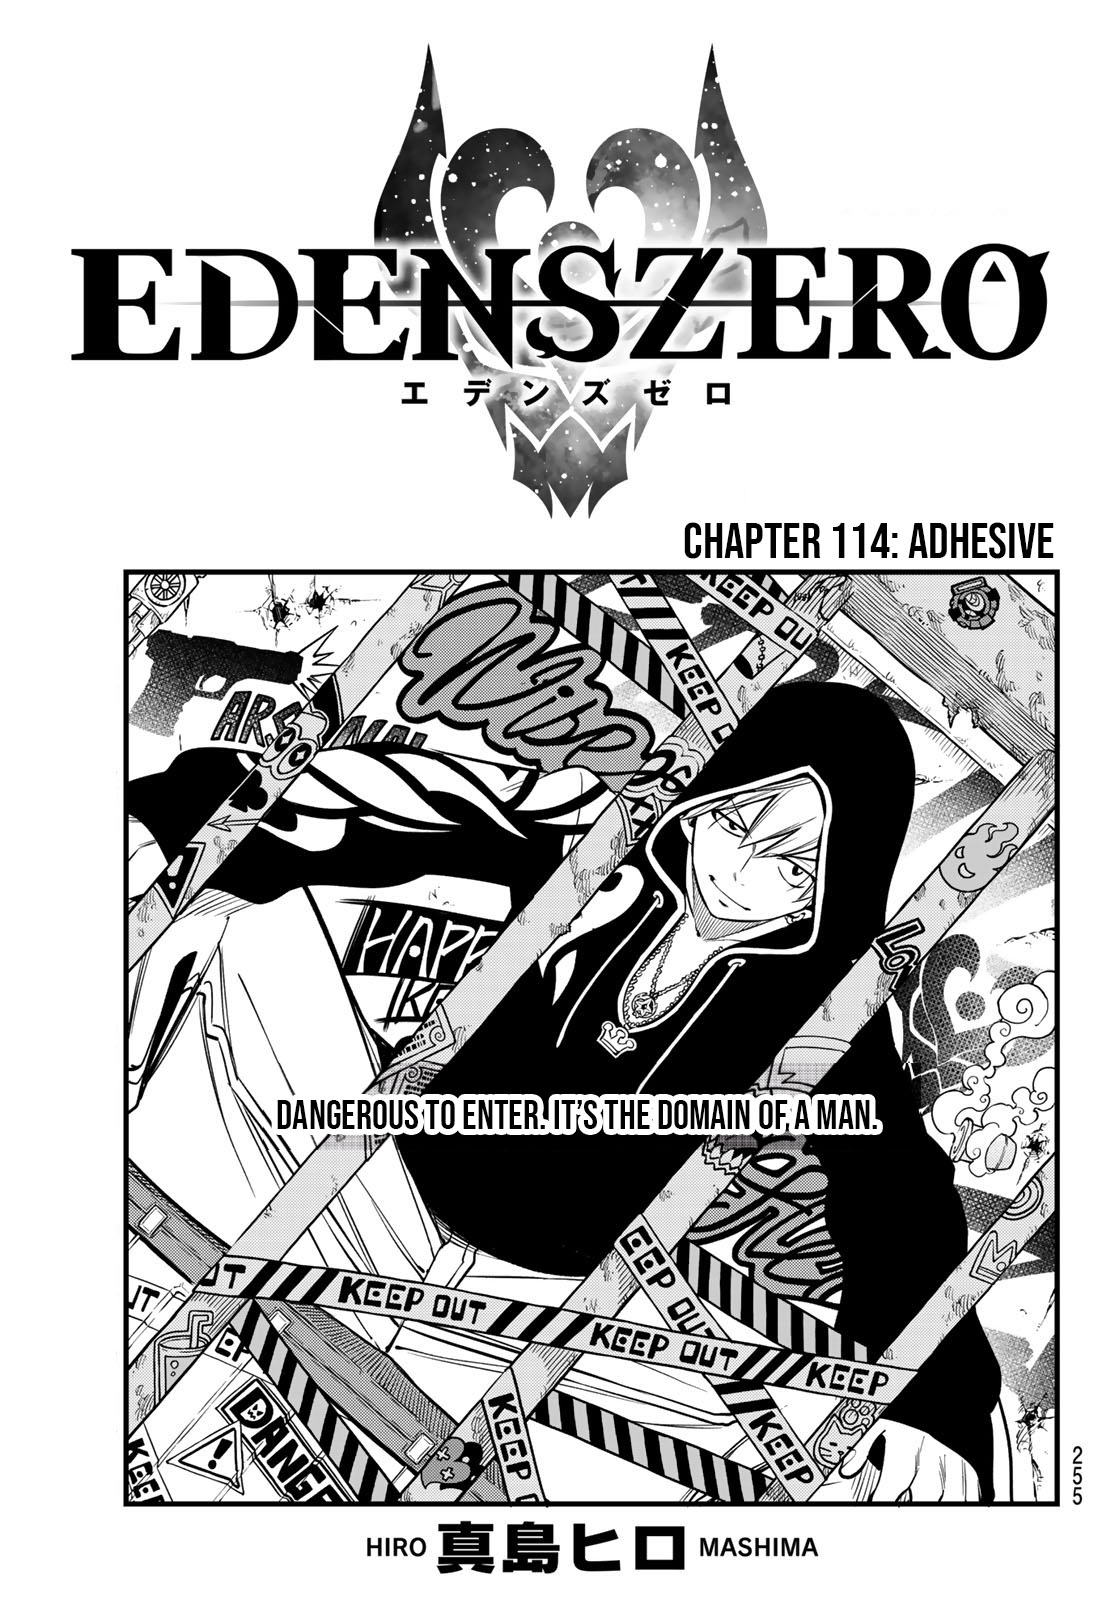 Edens Zero Ch. 114 Adhesive